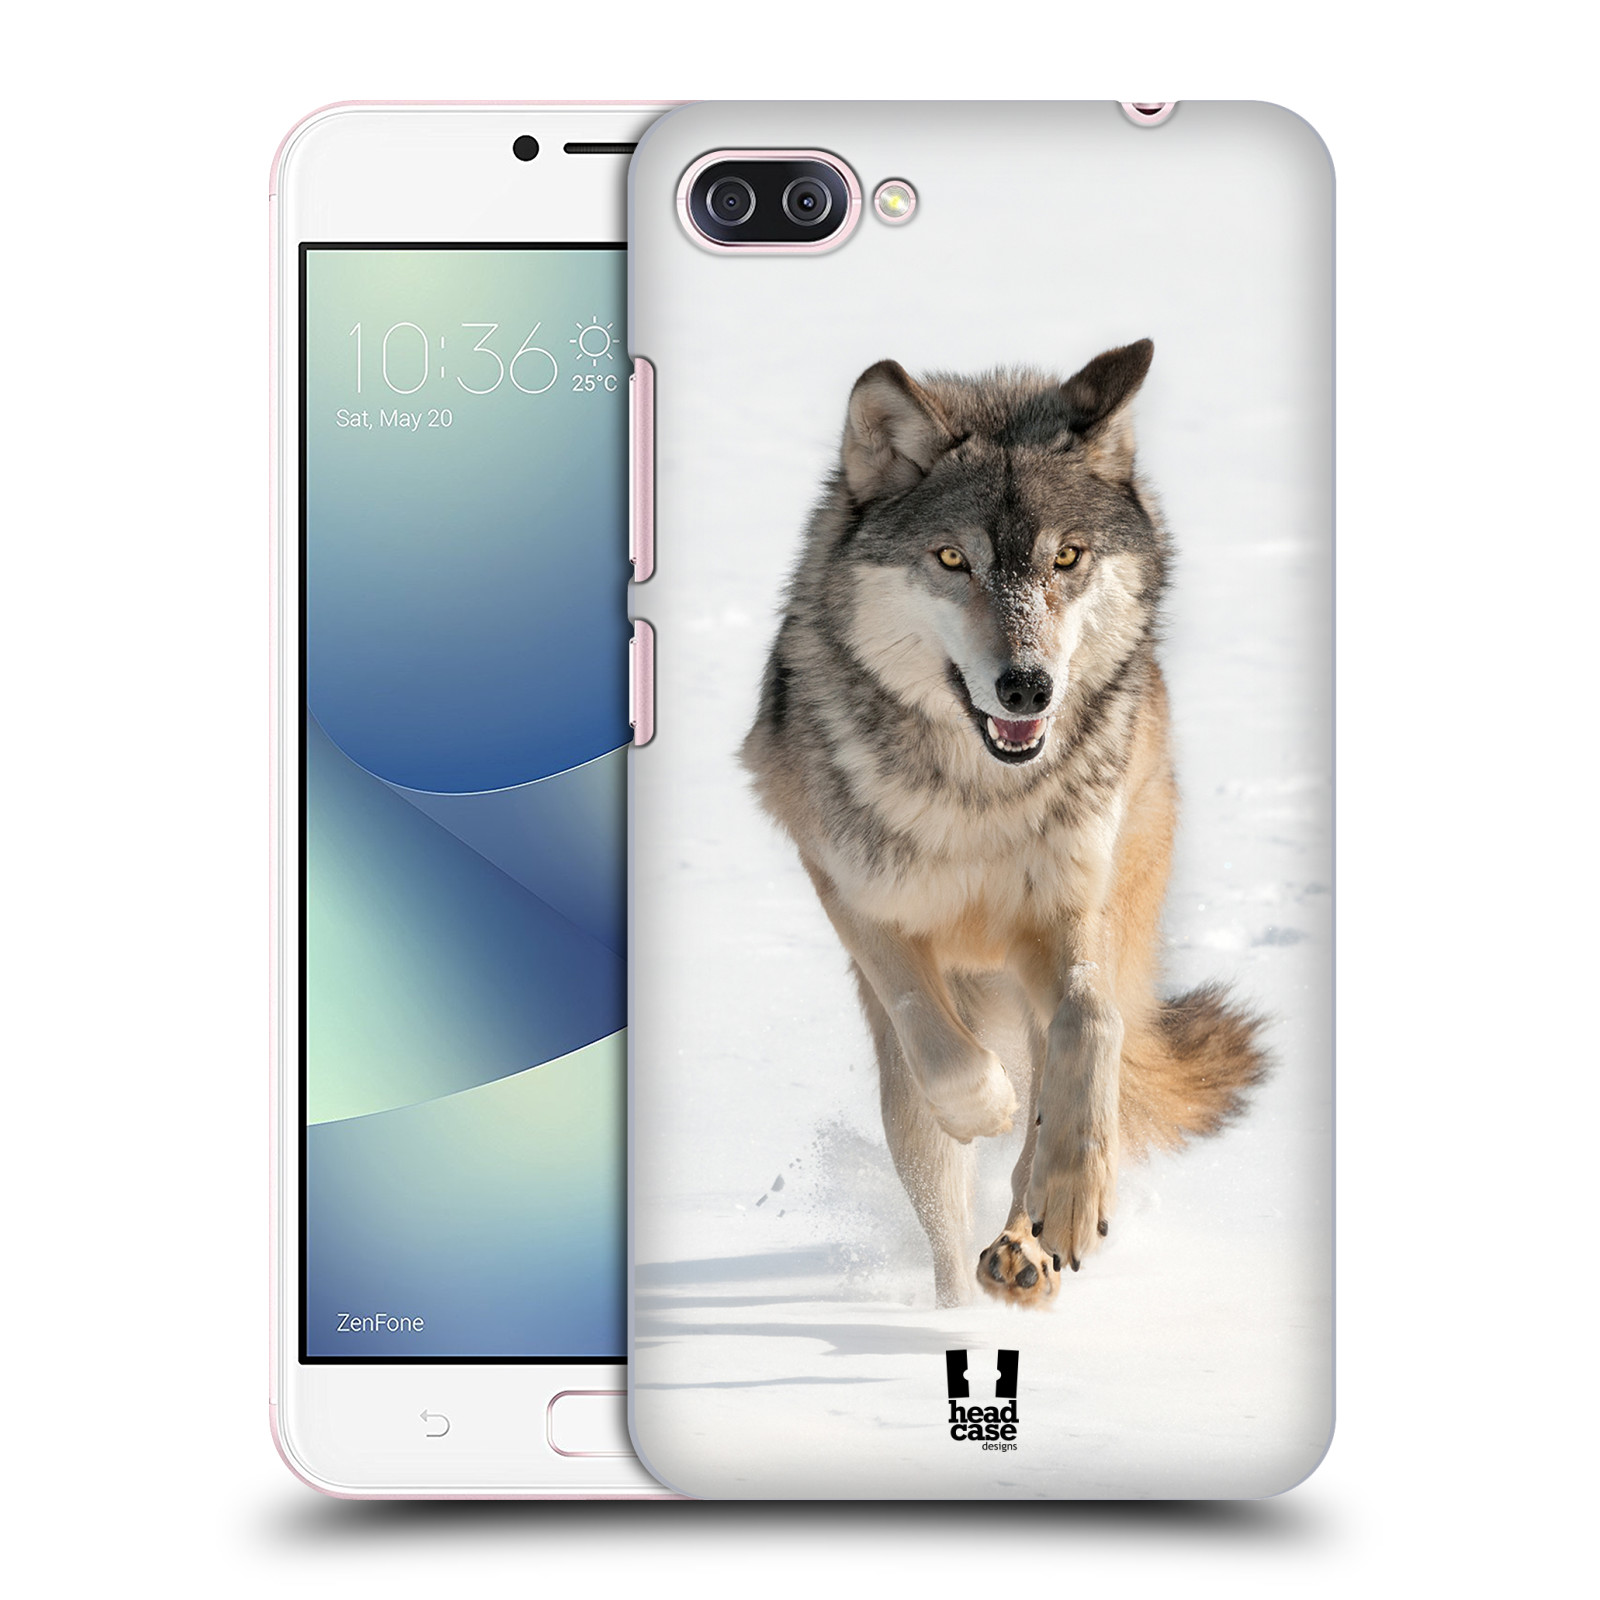 Zadní obal pro mobil Asus Zenfone 4 MAX / 4 MAX PRO (ZC554KL) - HEAD CASE - Svět zvířat divoký vlk